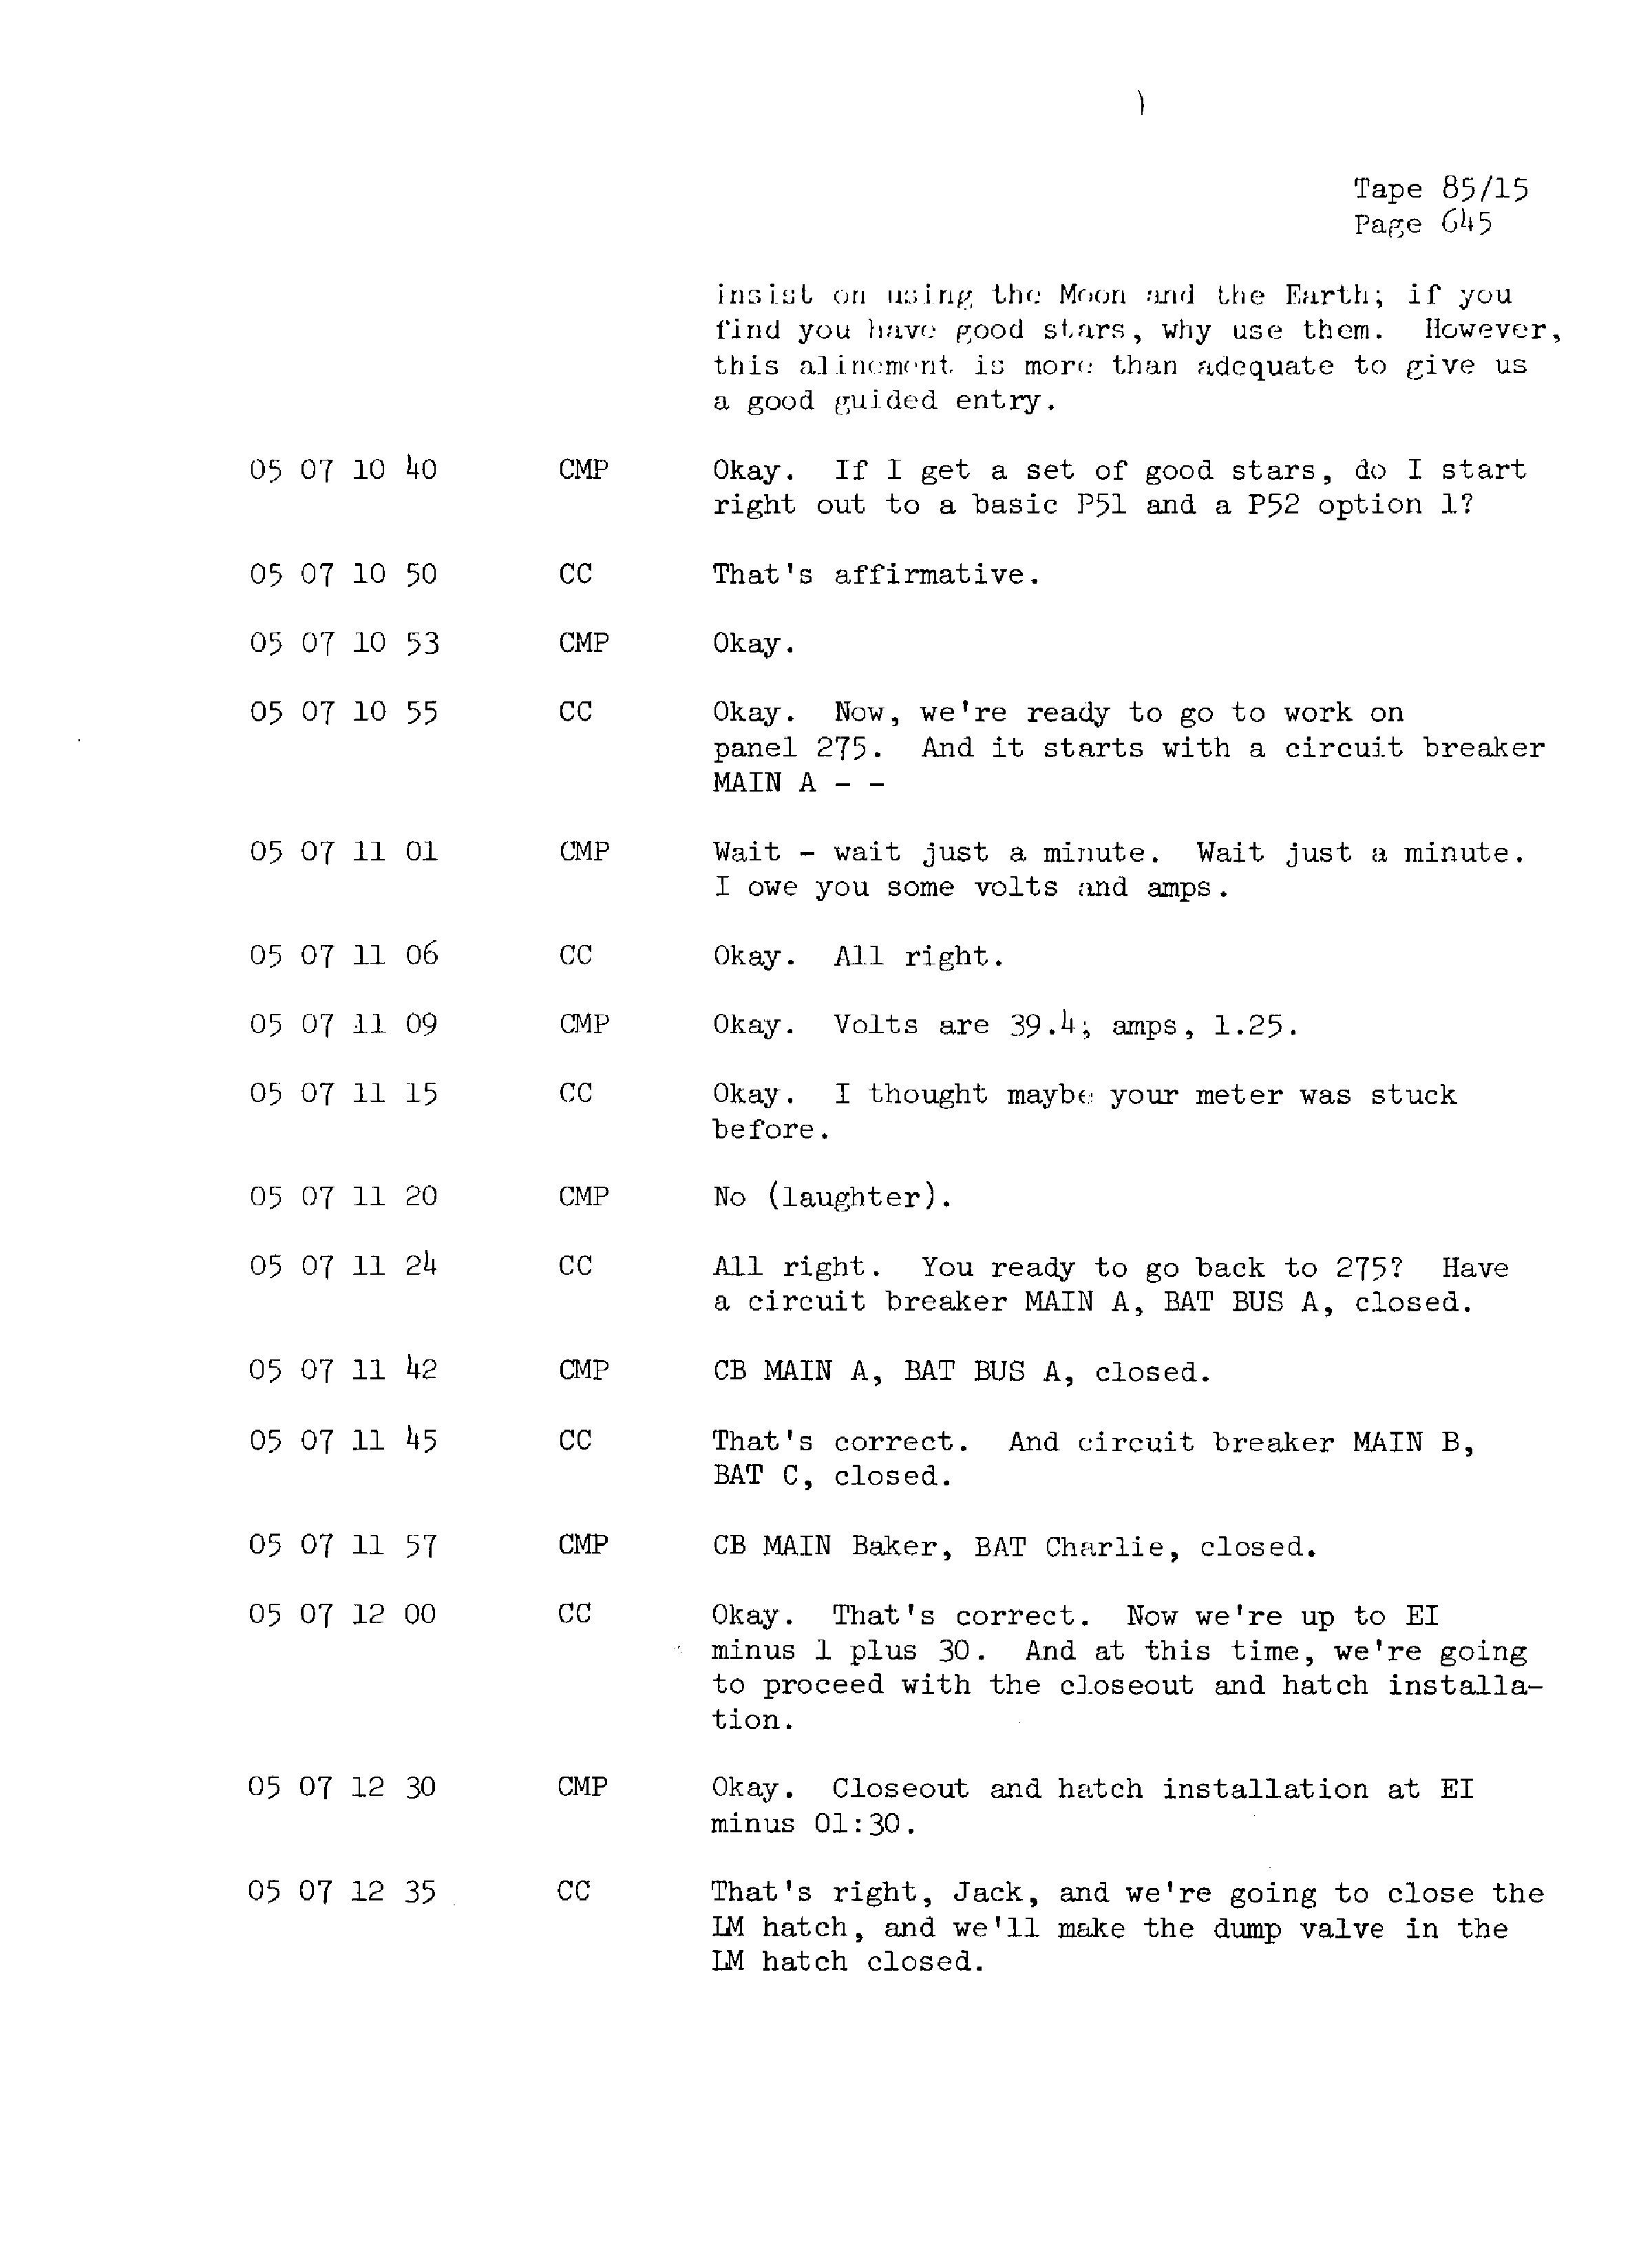 Page 652 of Apollo 13’s original transcript